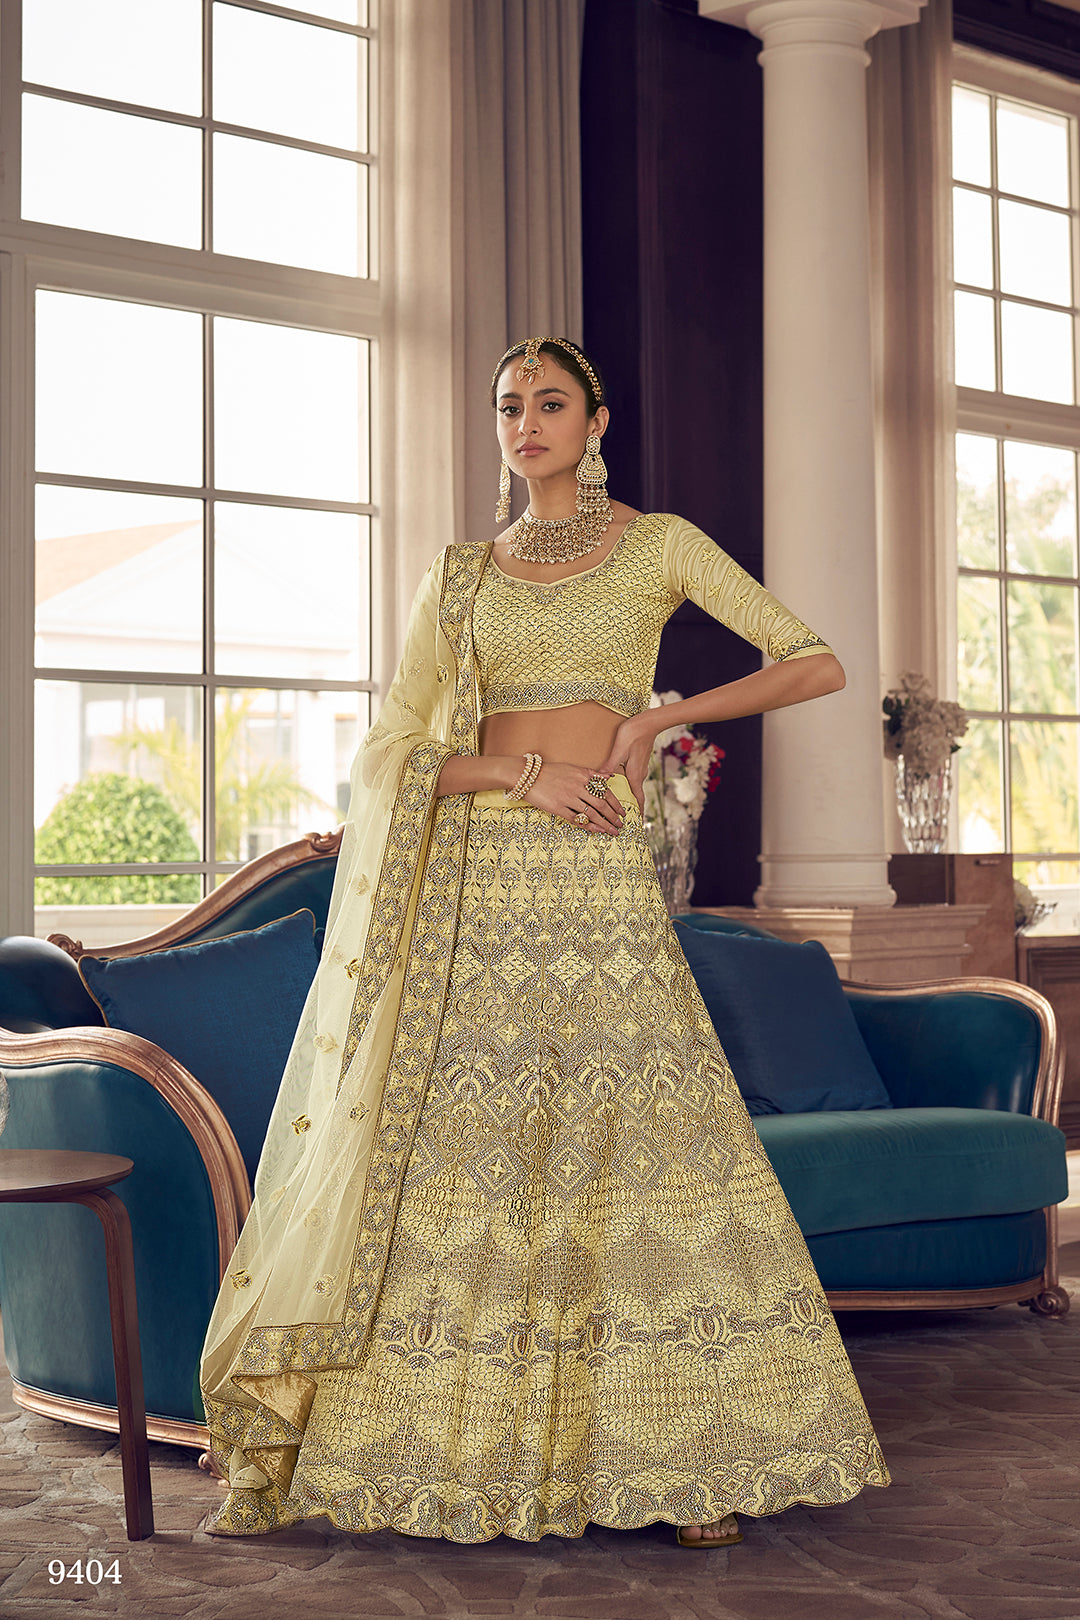 15+ Enchanting Yellow Lehengas We Love! | Indian bridal fashion, Indian  bridal outfits, Latest bridal lehenga